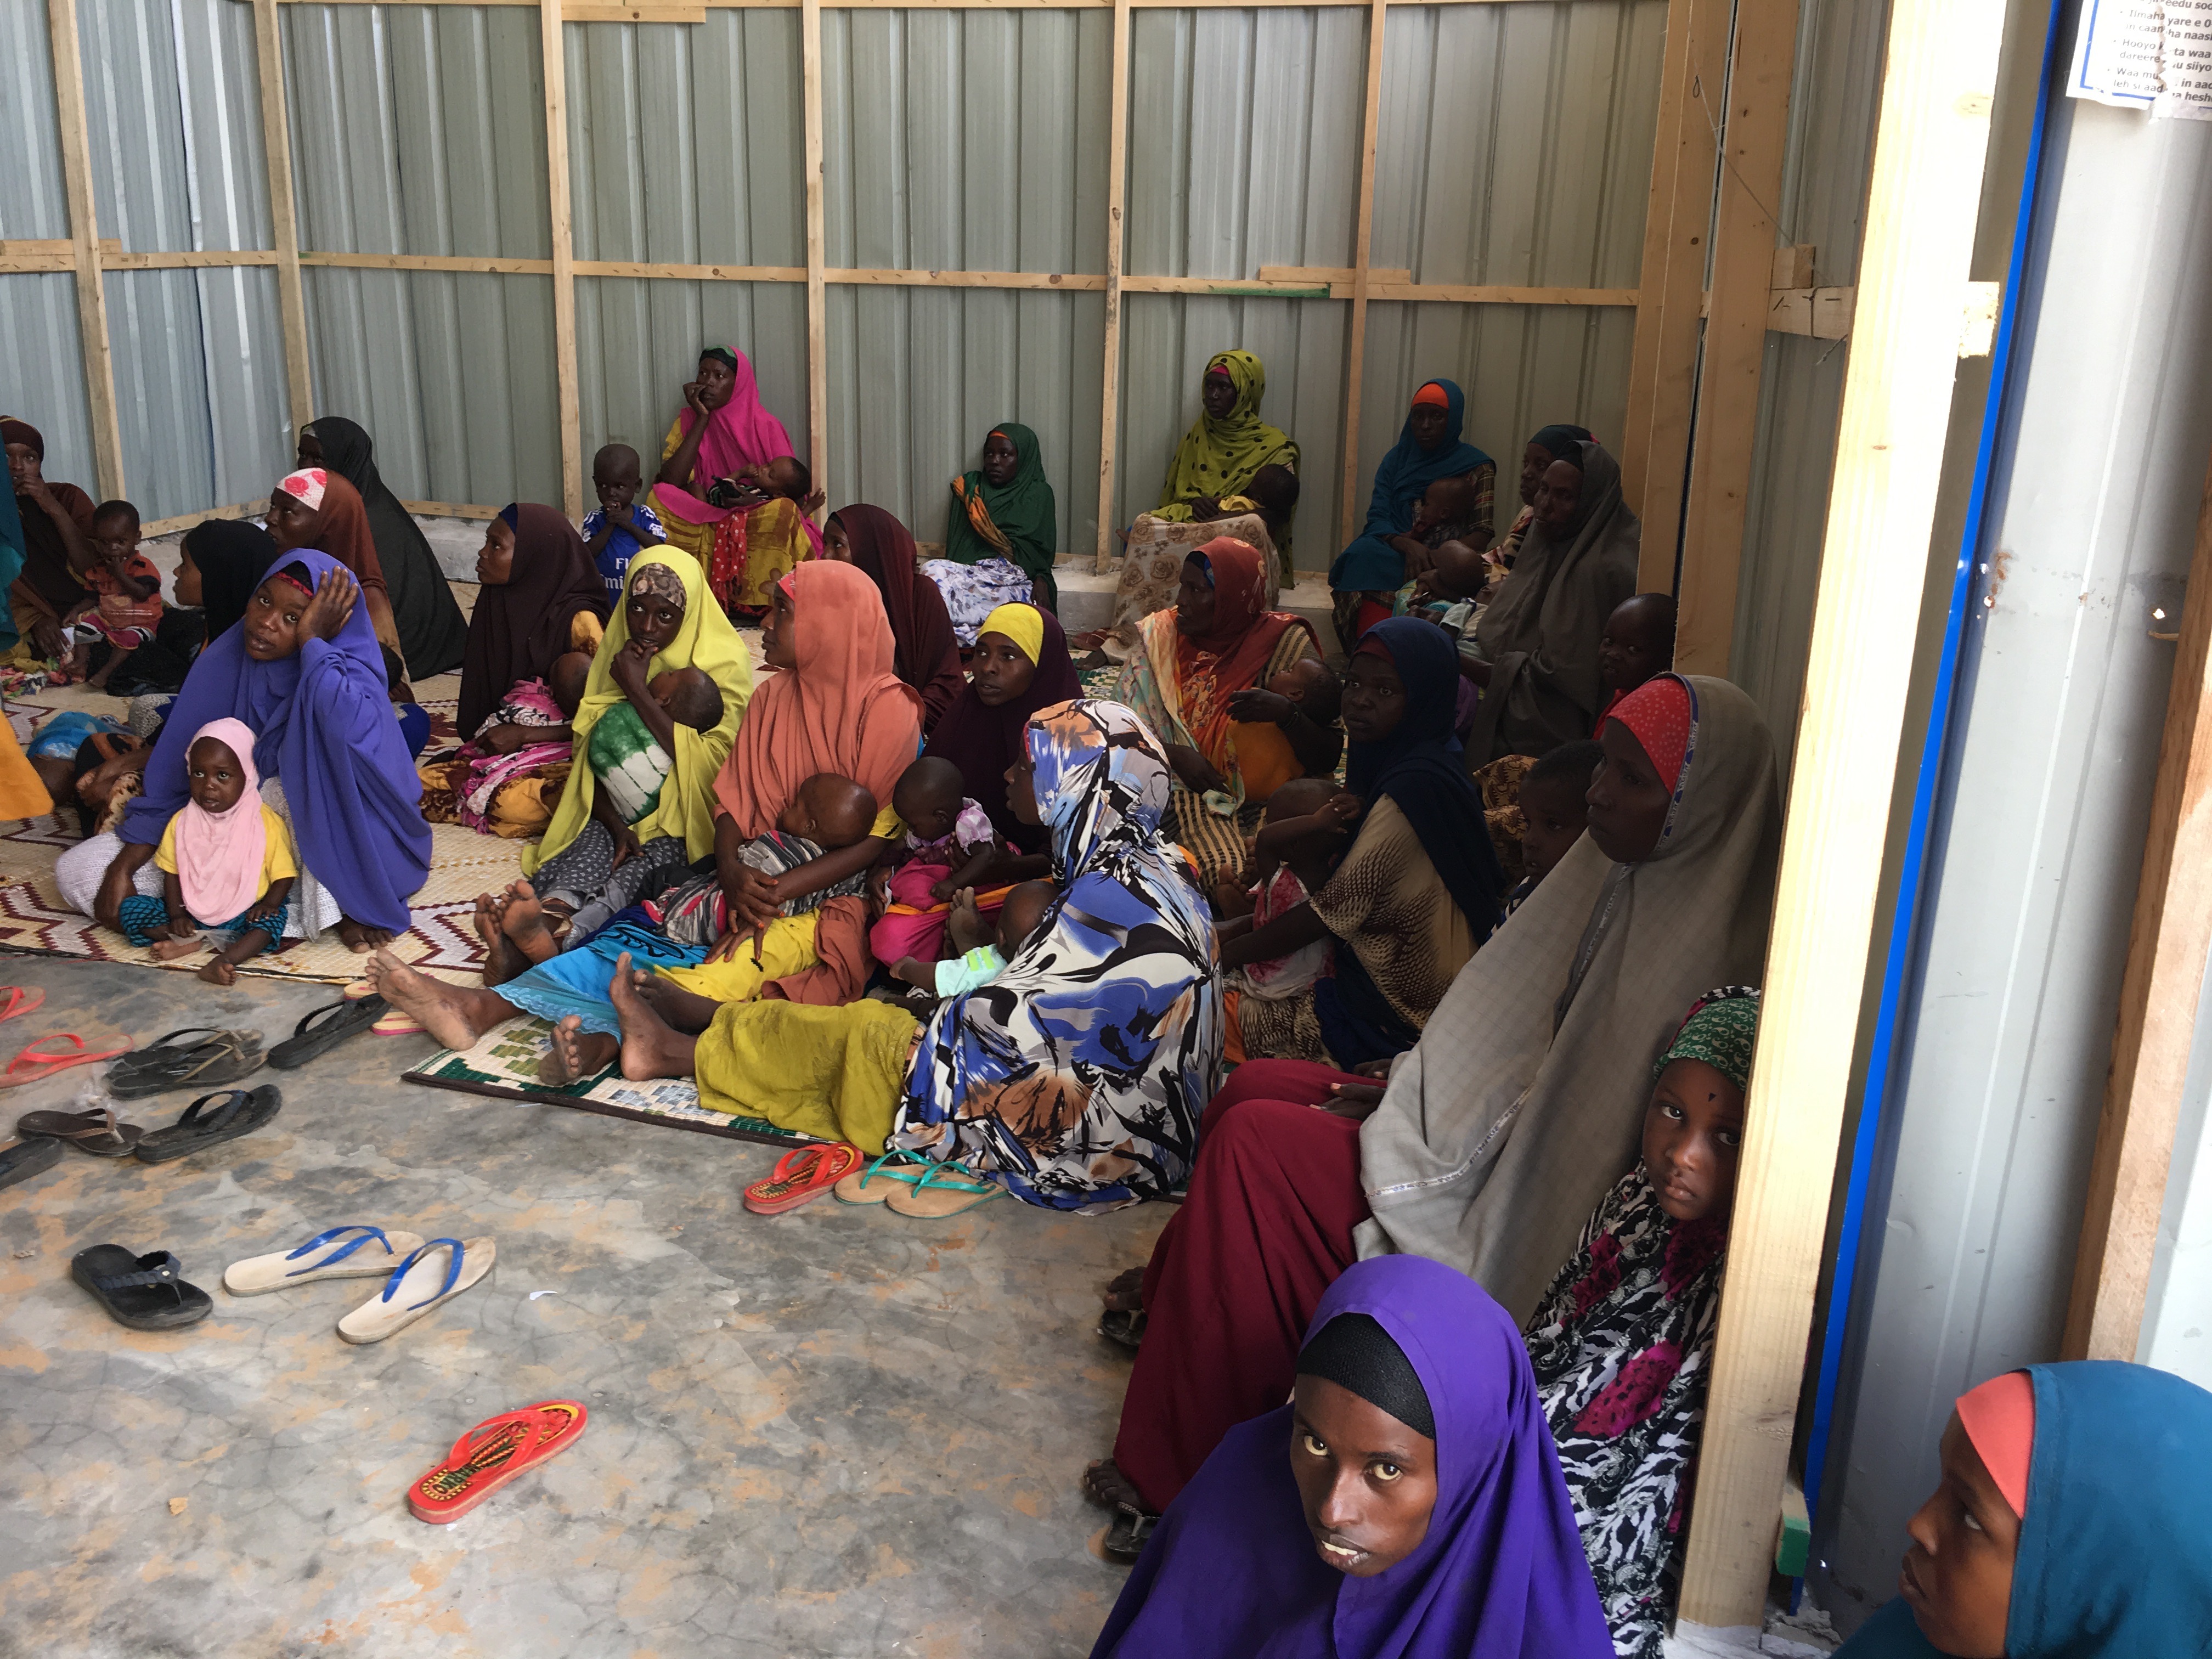 Somalia Crisis: One By One, My Children Slipped Away | HuffPost UK News